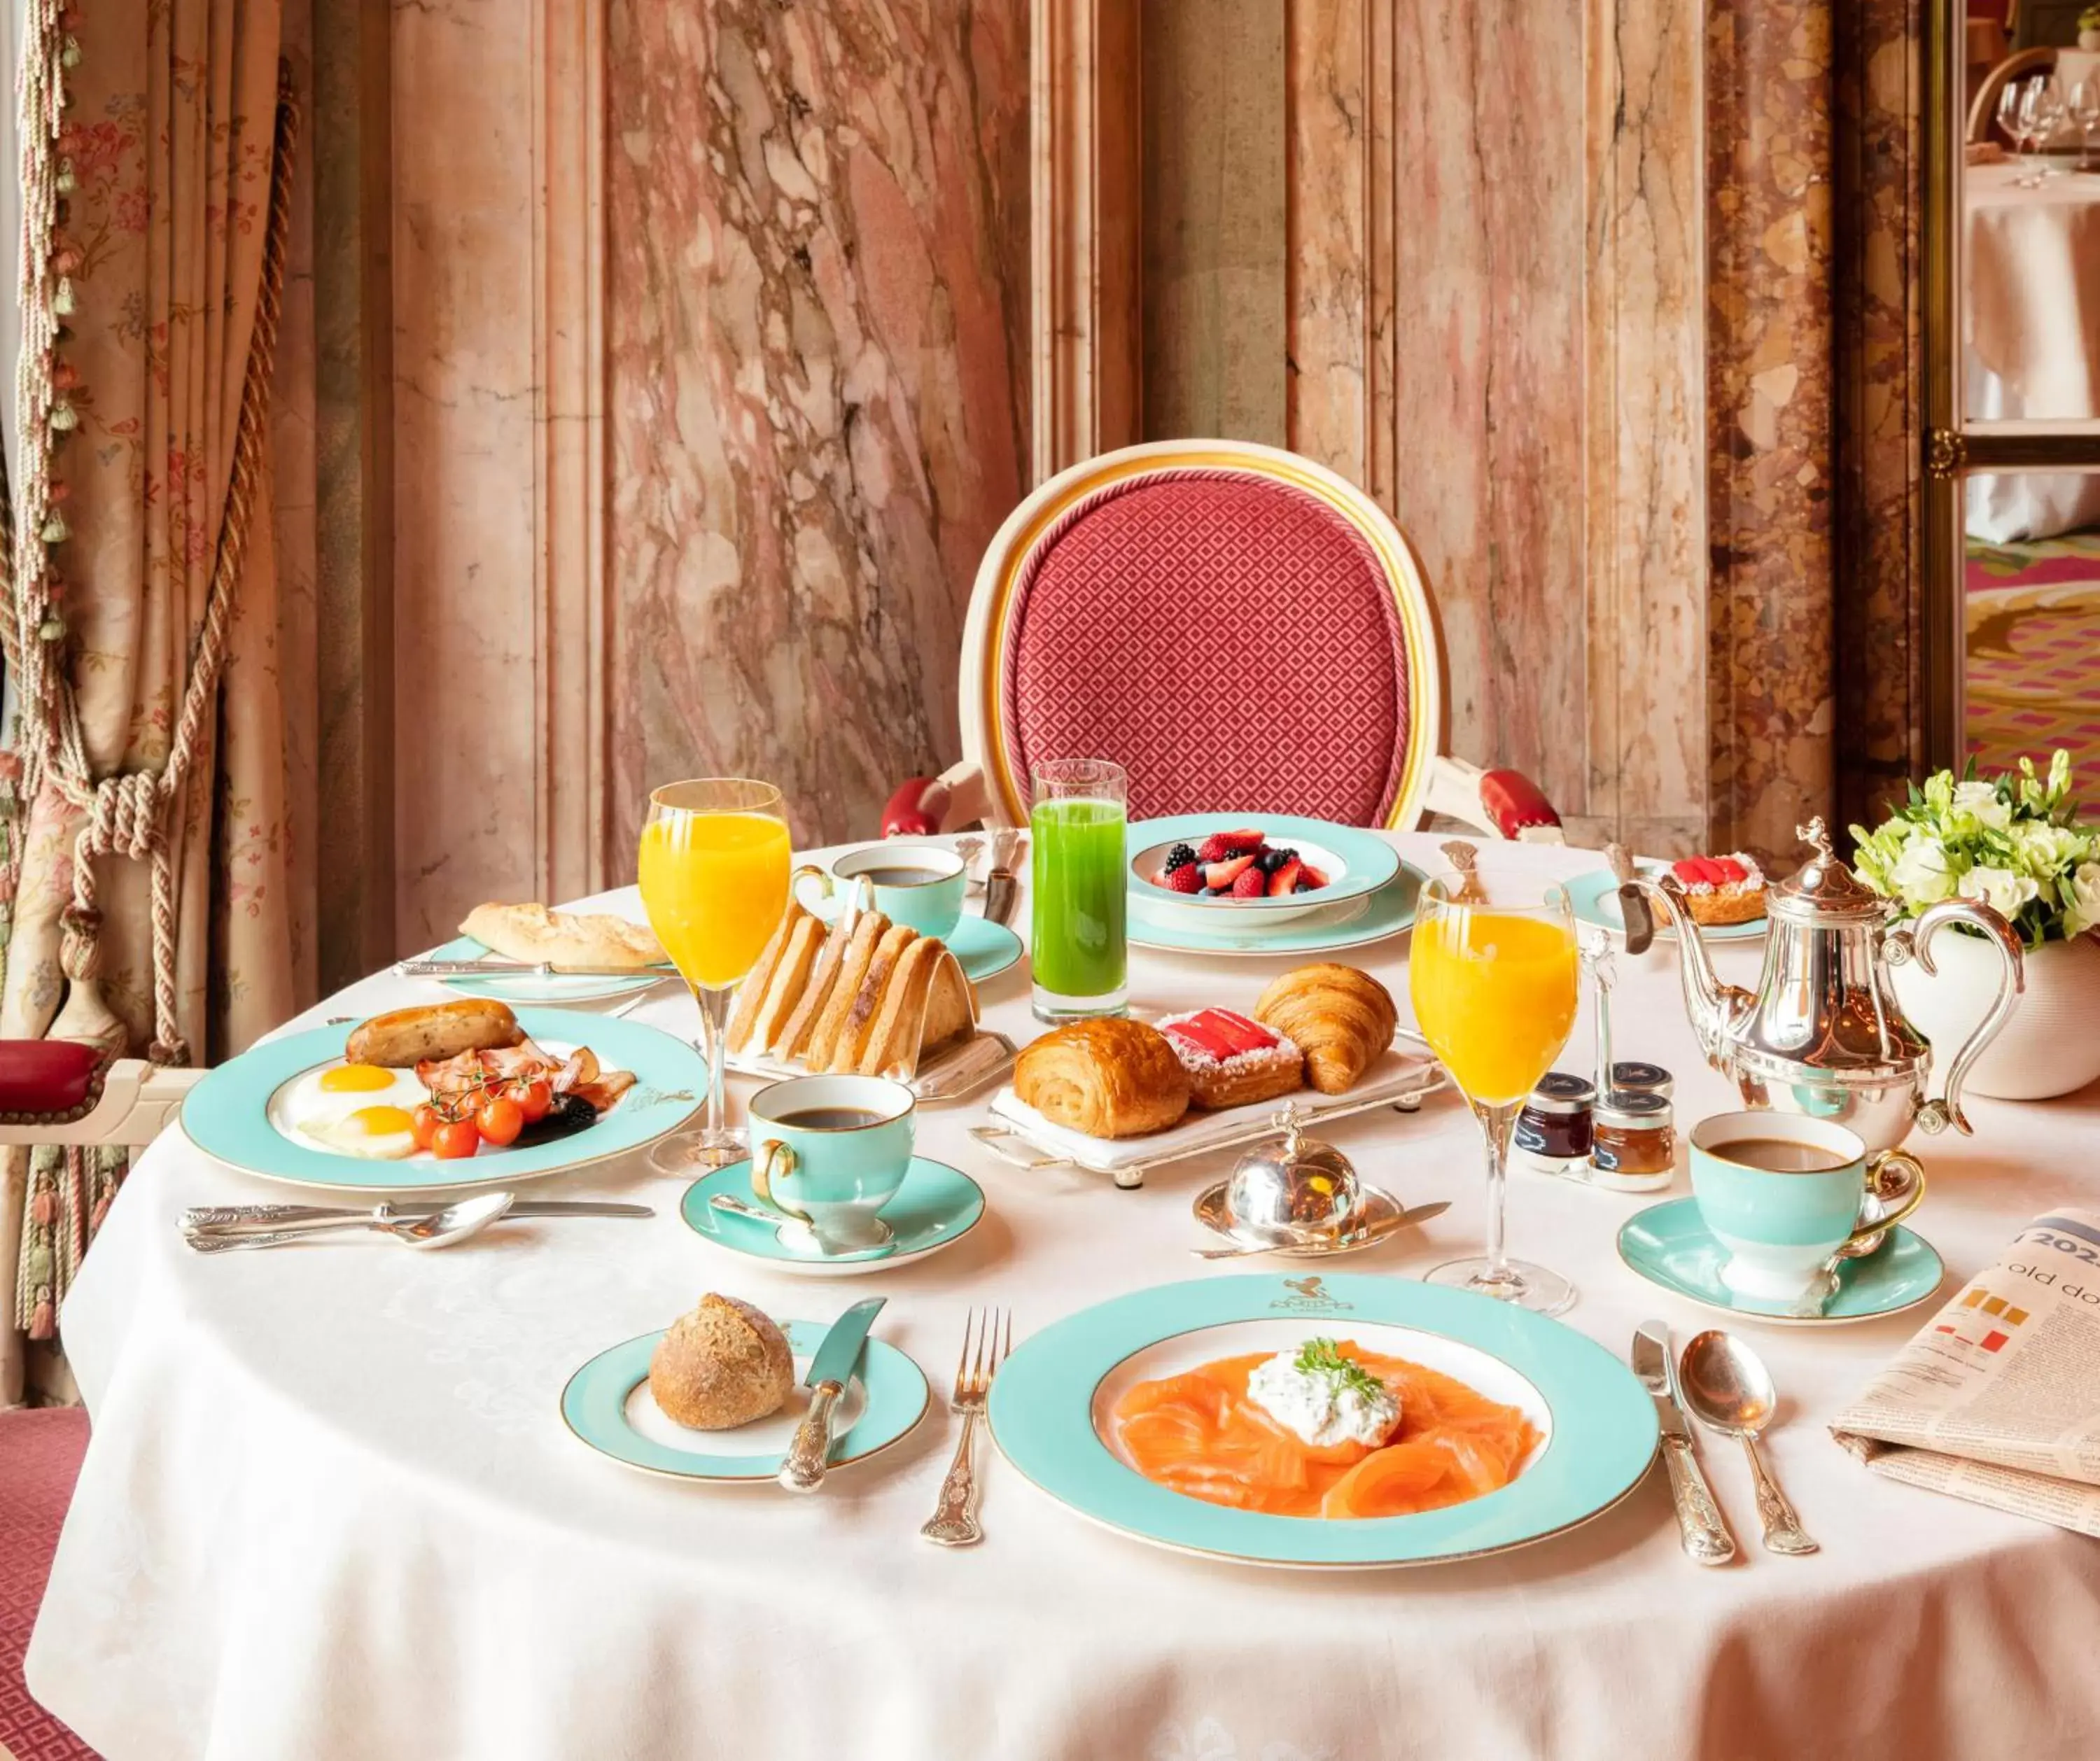 Dining area, Breakfast in The Ritz London